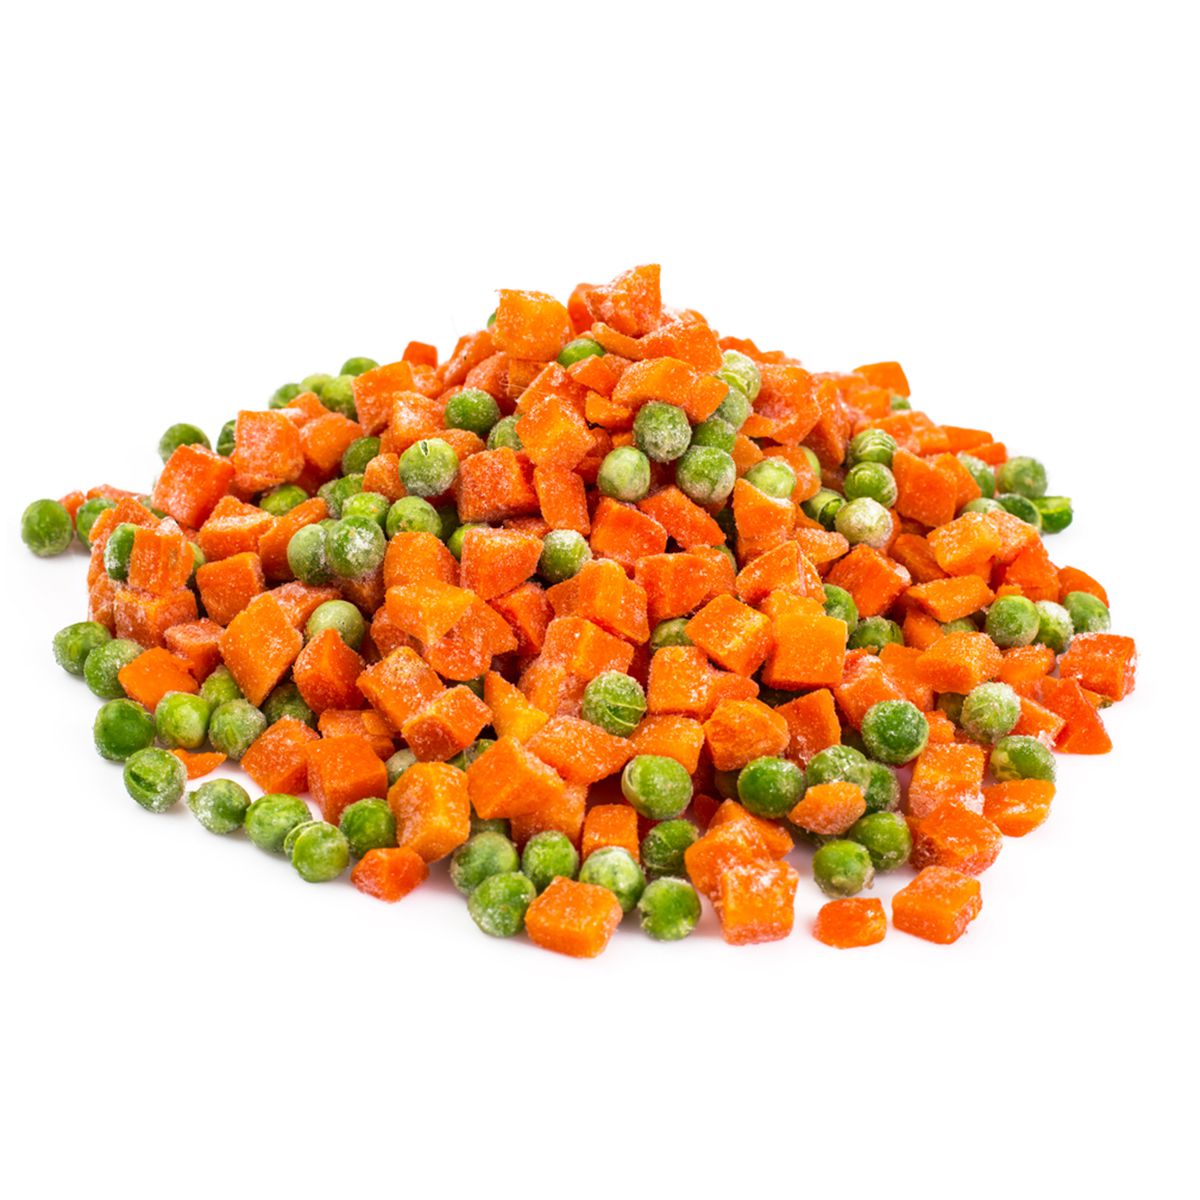 BoxNCase Frozen Peas and Carrots 2.5 lb